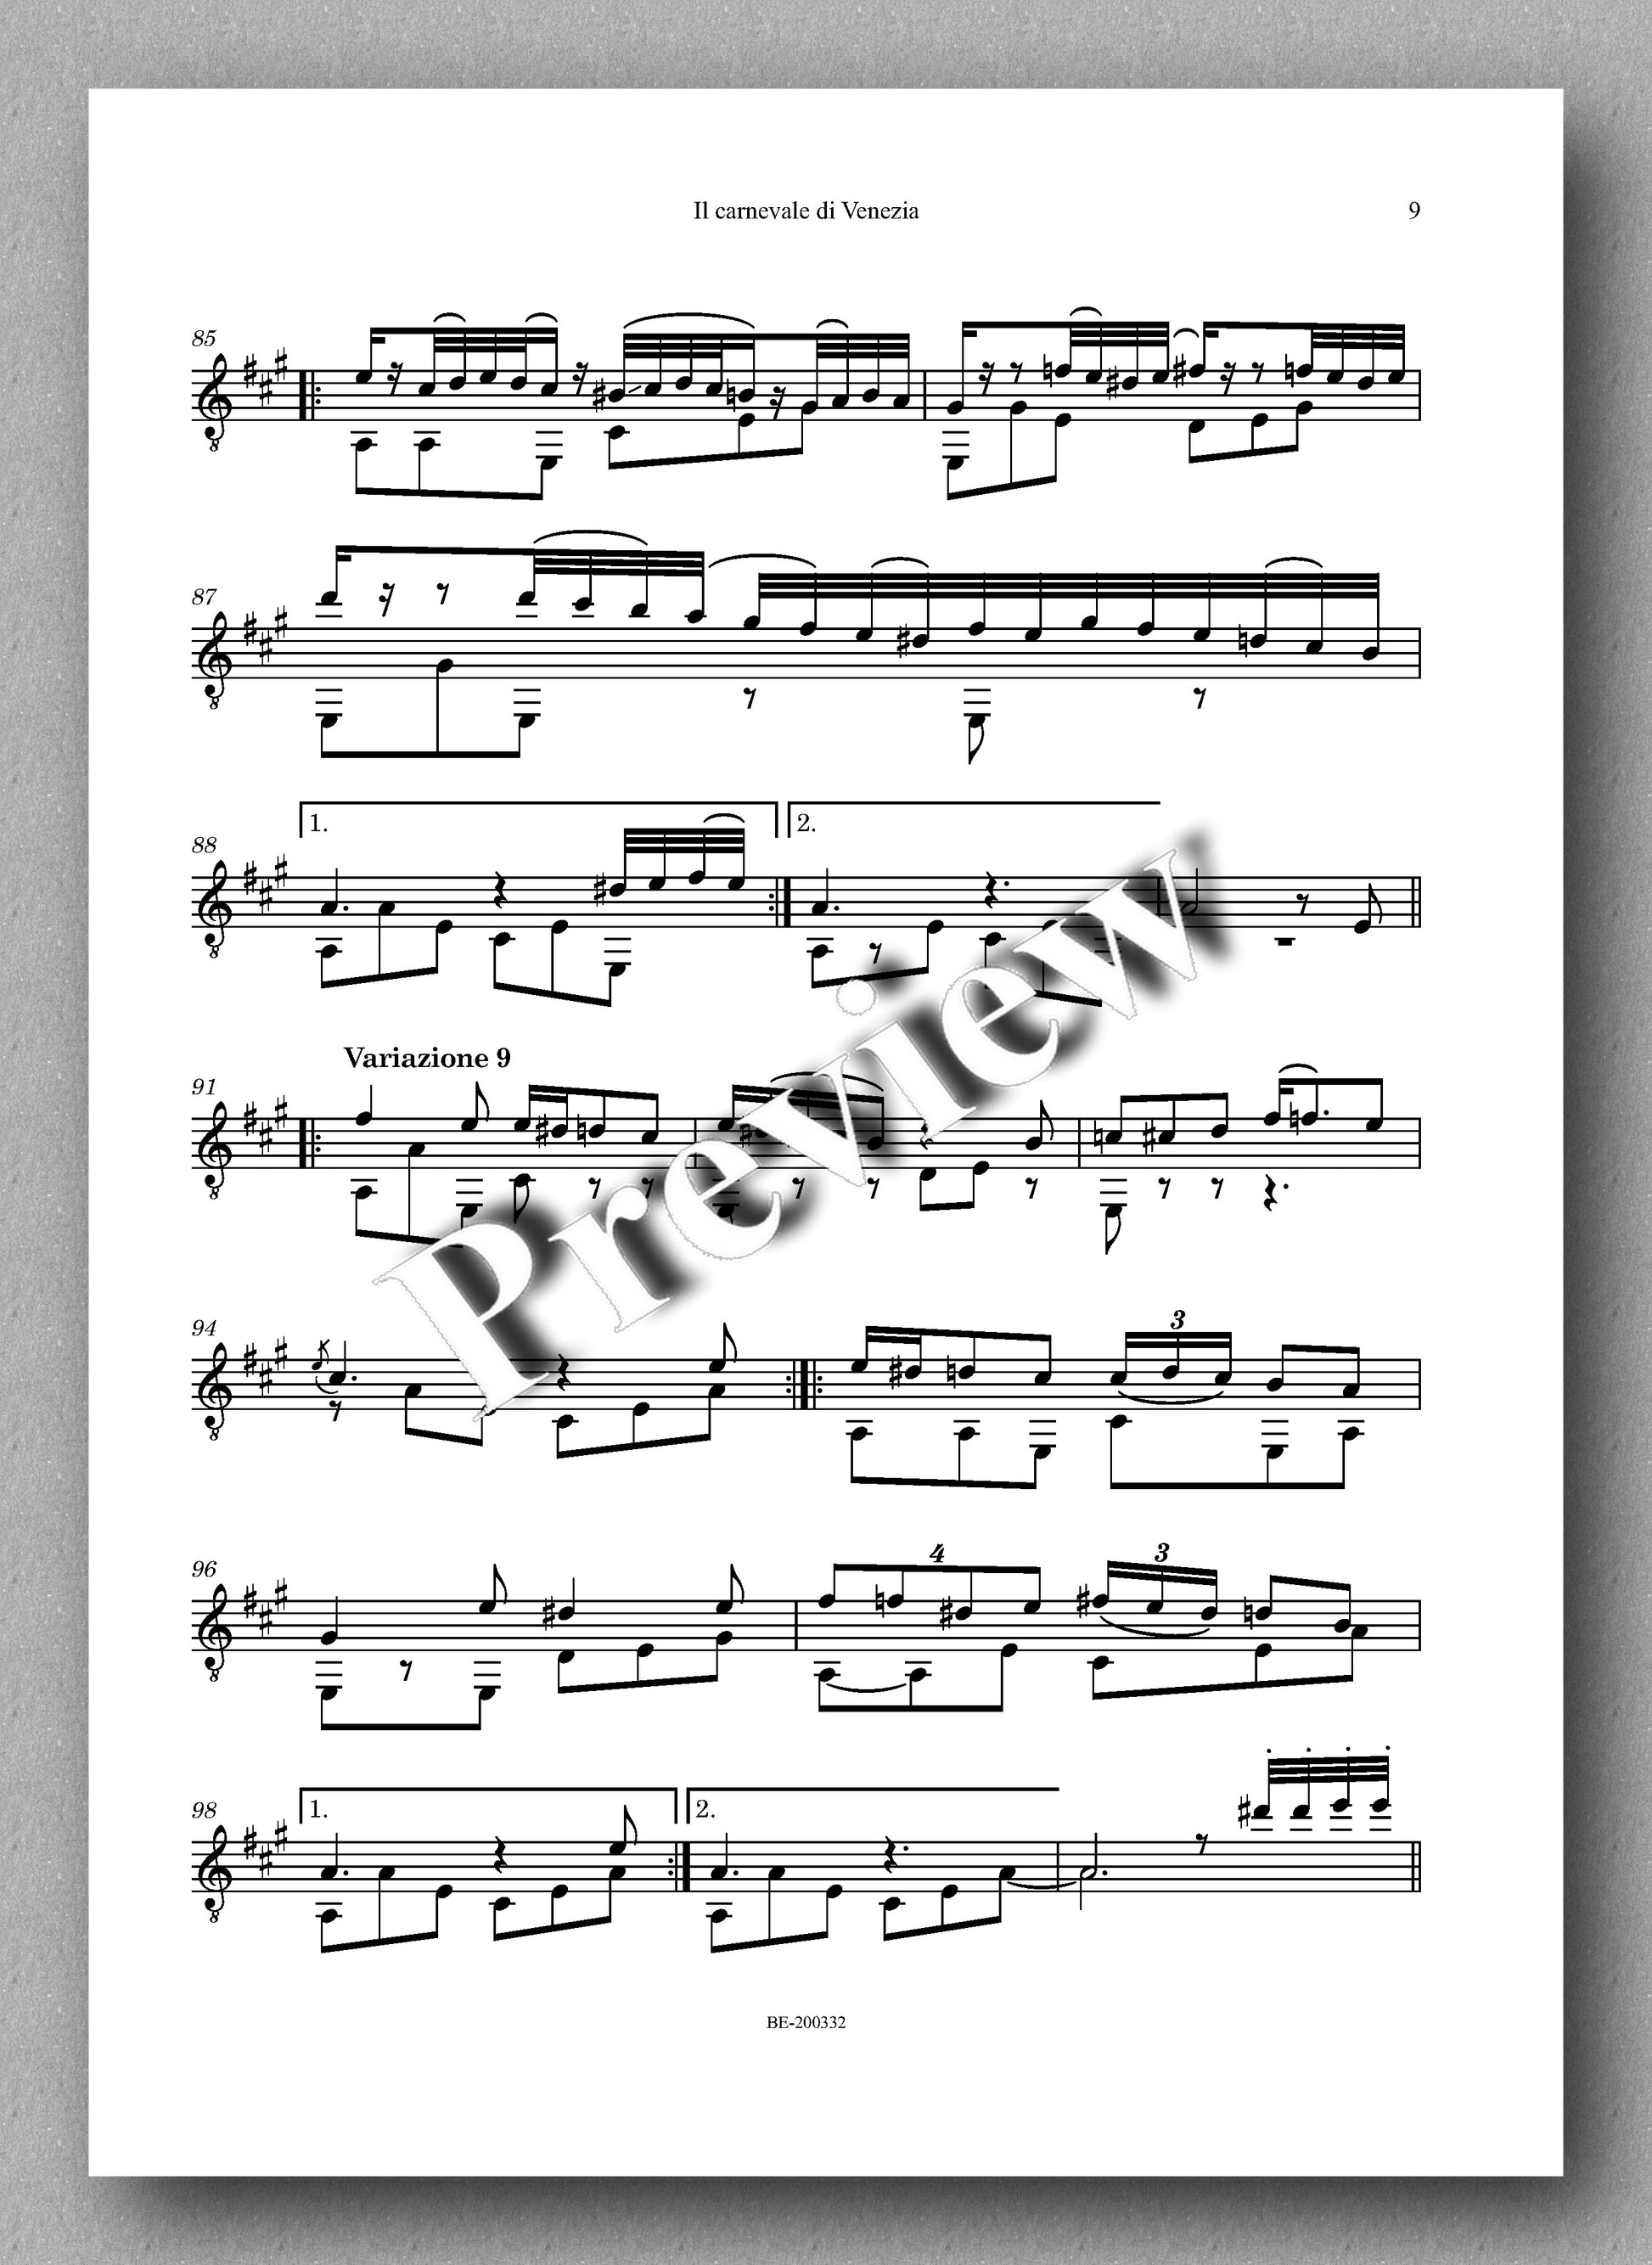 Niccolò Paganini, Il carnevale di Venezia-Tema e variazioni  - preview of the music score 2